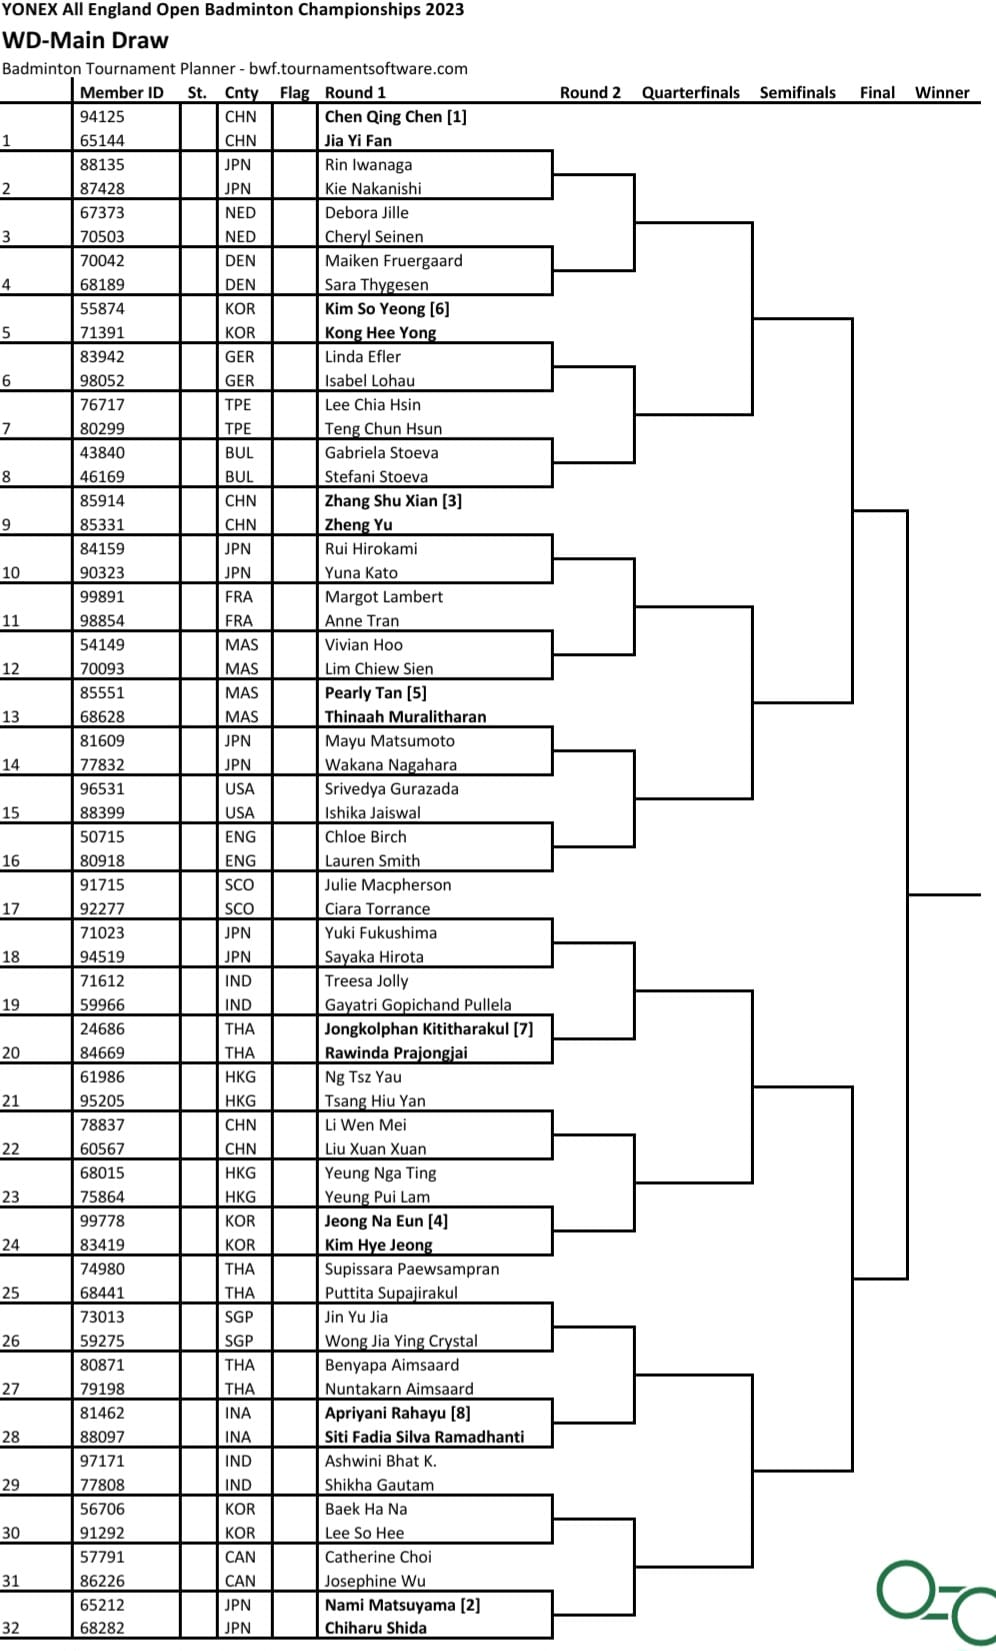 Senarai Undian Perlawanan Pemain Malaysia Dalam BWF All England Open 2023